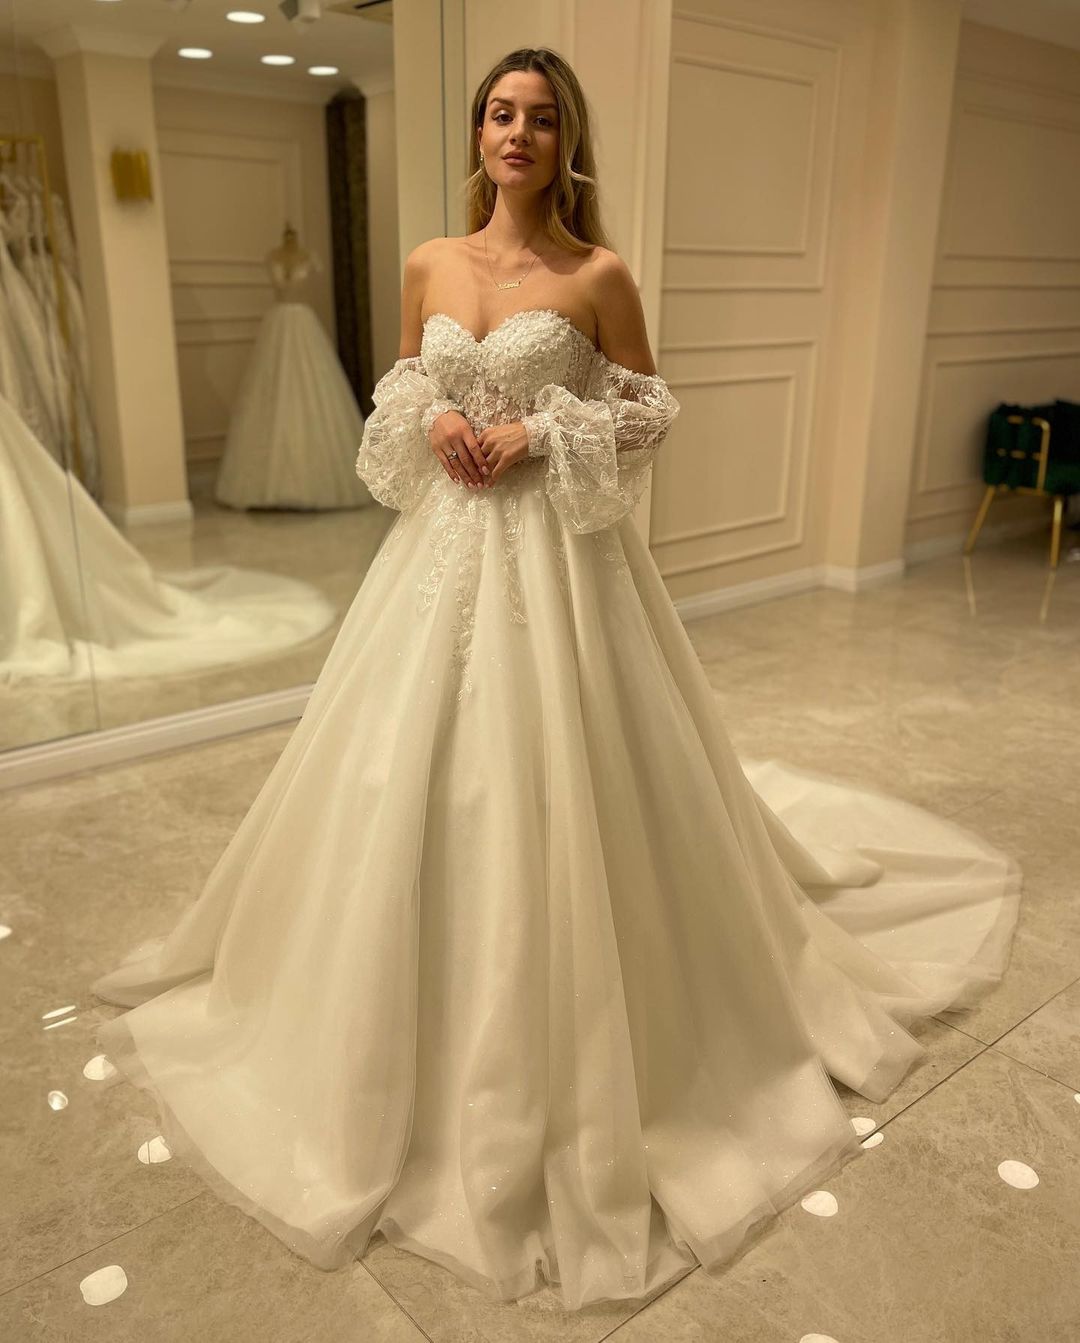 Kaufen Sie Schöne Hochzeitskleider A Linie online bei babyonlinedress.de. Brautkleider mit Spitze aus tüll zur Hochzeit gehen.